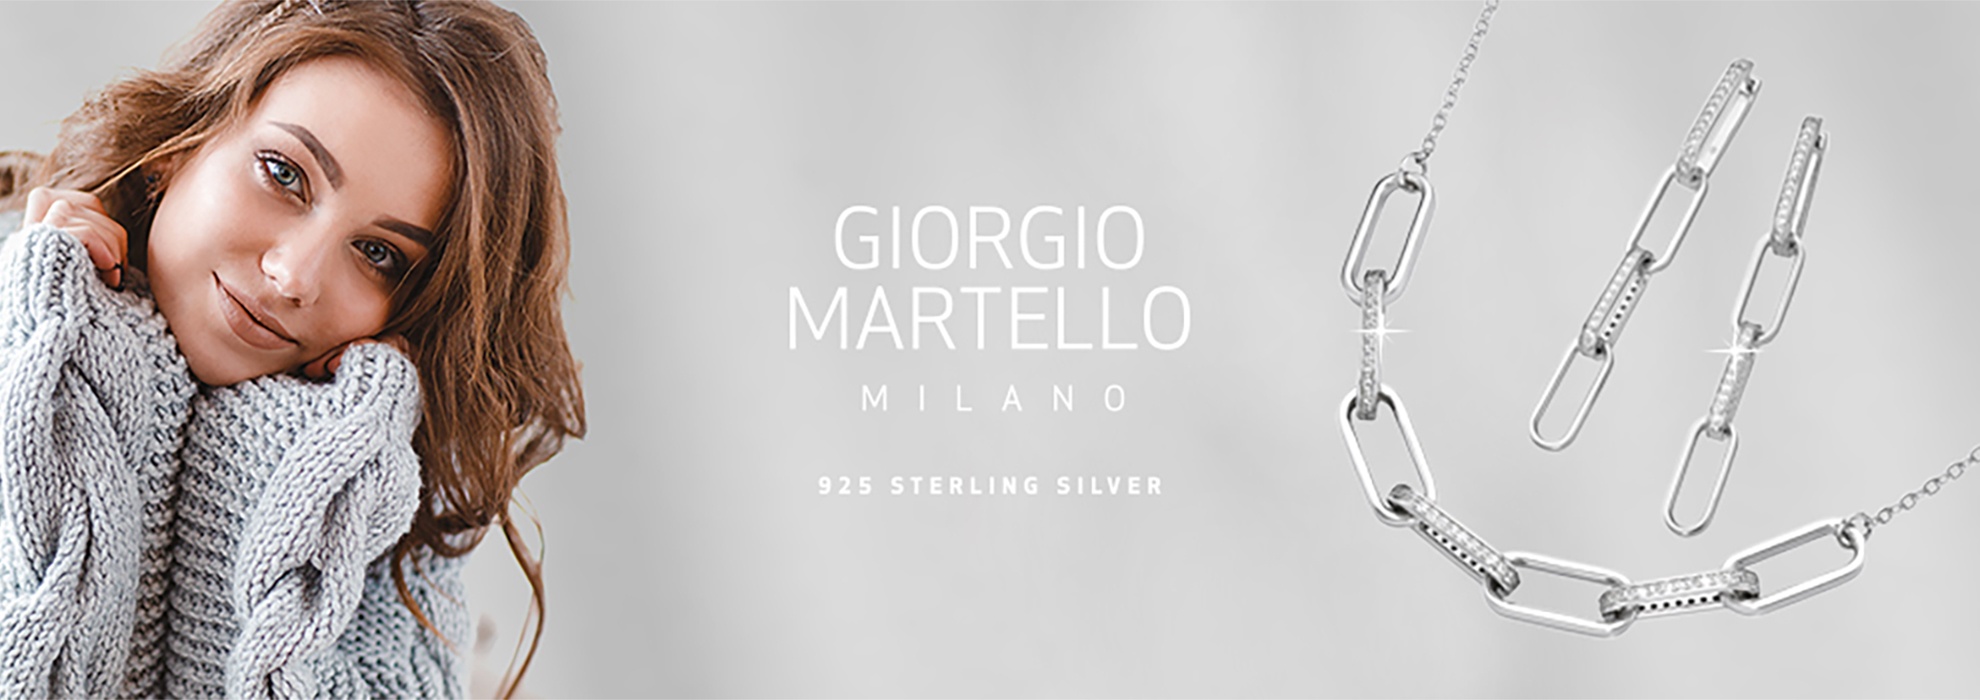 Giorgio Martello